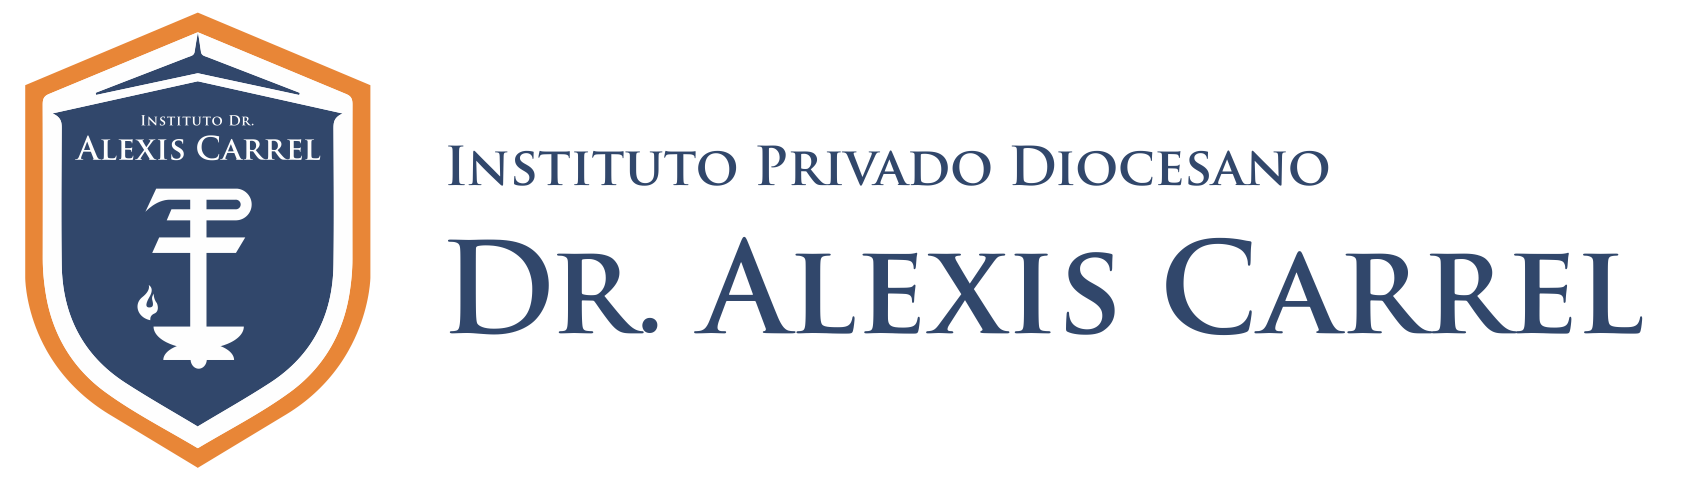 Instituto Dr. Alexis Carrel